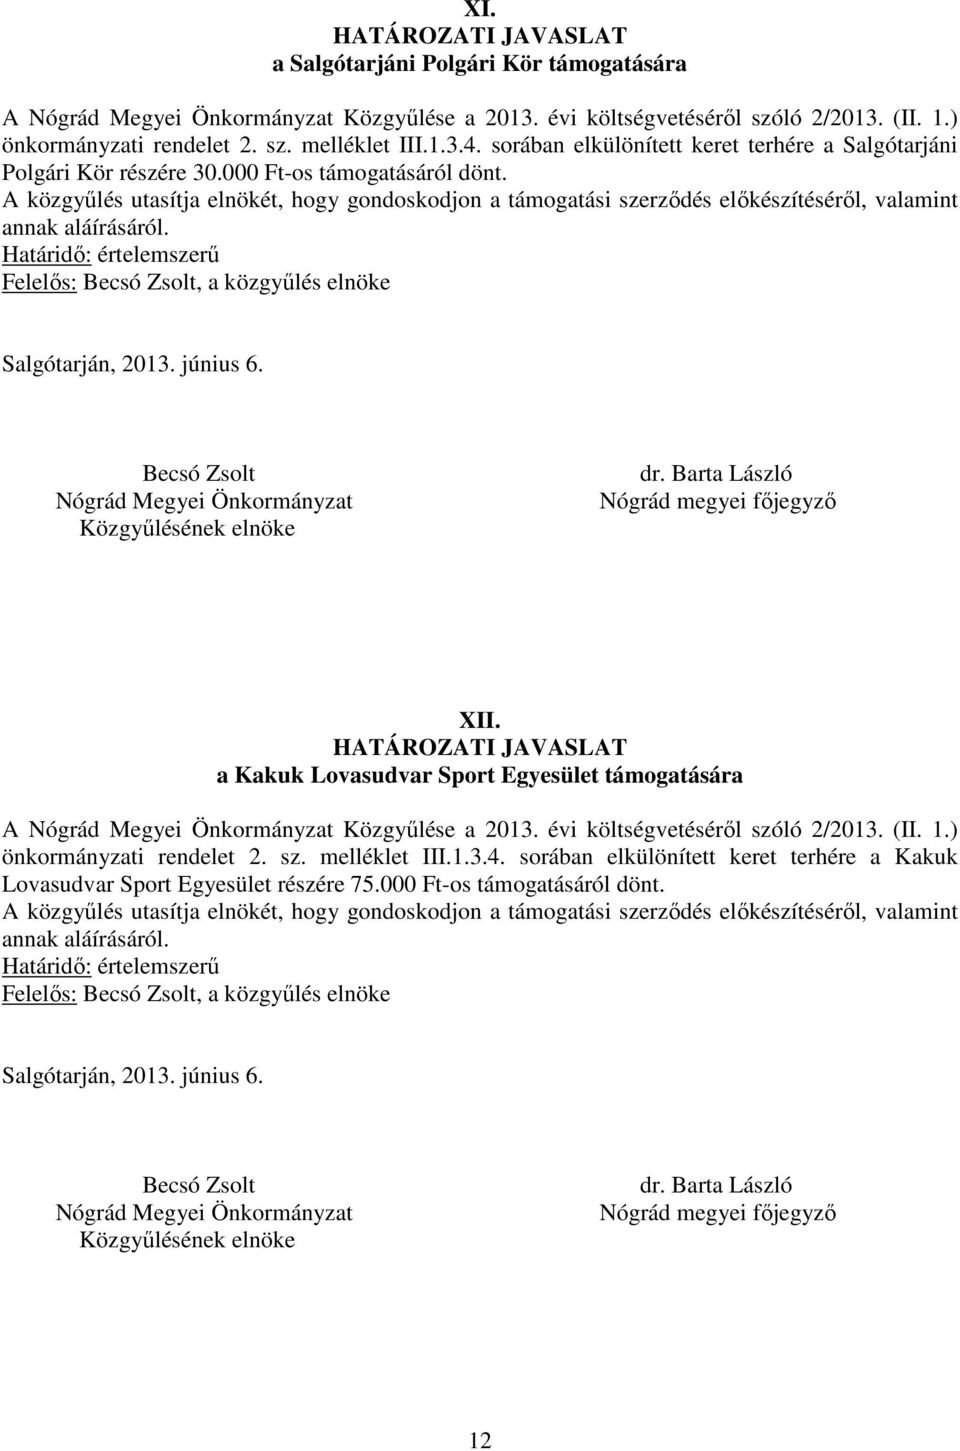 a Kakuk Lovasudvar Sport Egyesület támogatására A Közgyűlése a 2013. évi költségvetéséről szóló 2/2013. (II. 1.) önkormányzati rendelet 2. sz. melléklet III.